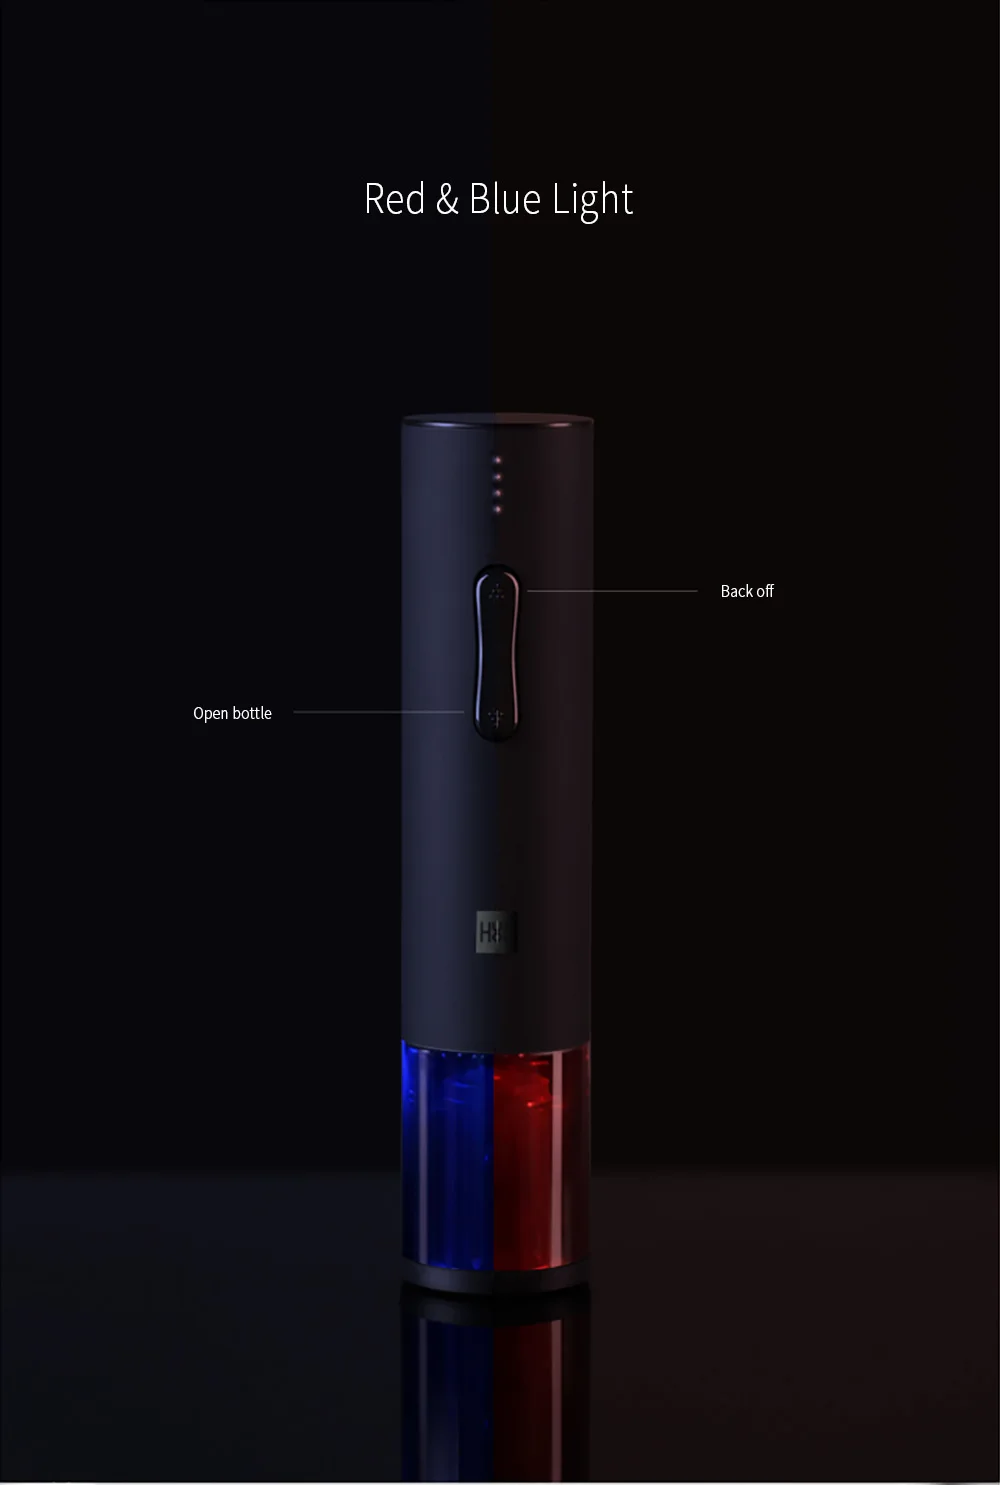 2019 Xiaomi Mijia креативная электрическая бутылка штопор открывалки 5 минут usb зарядка кухонный инструмент для дома отель вечерние свадебные